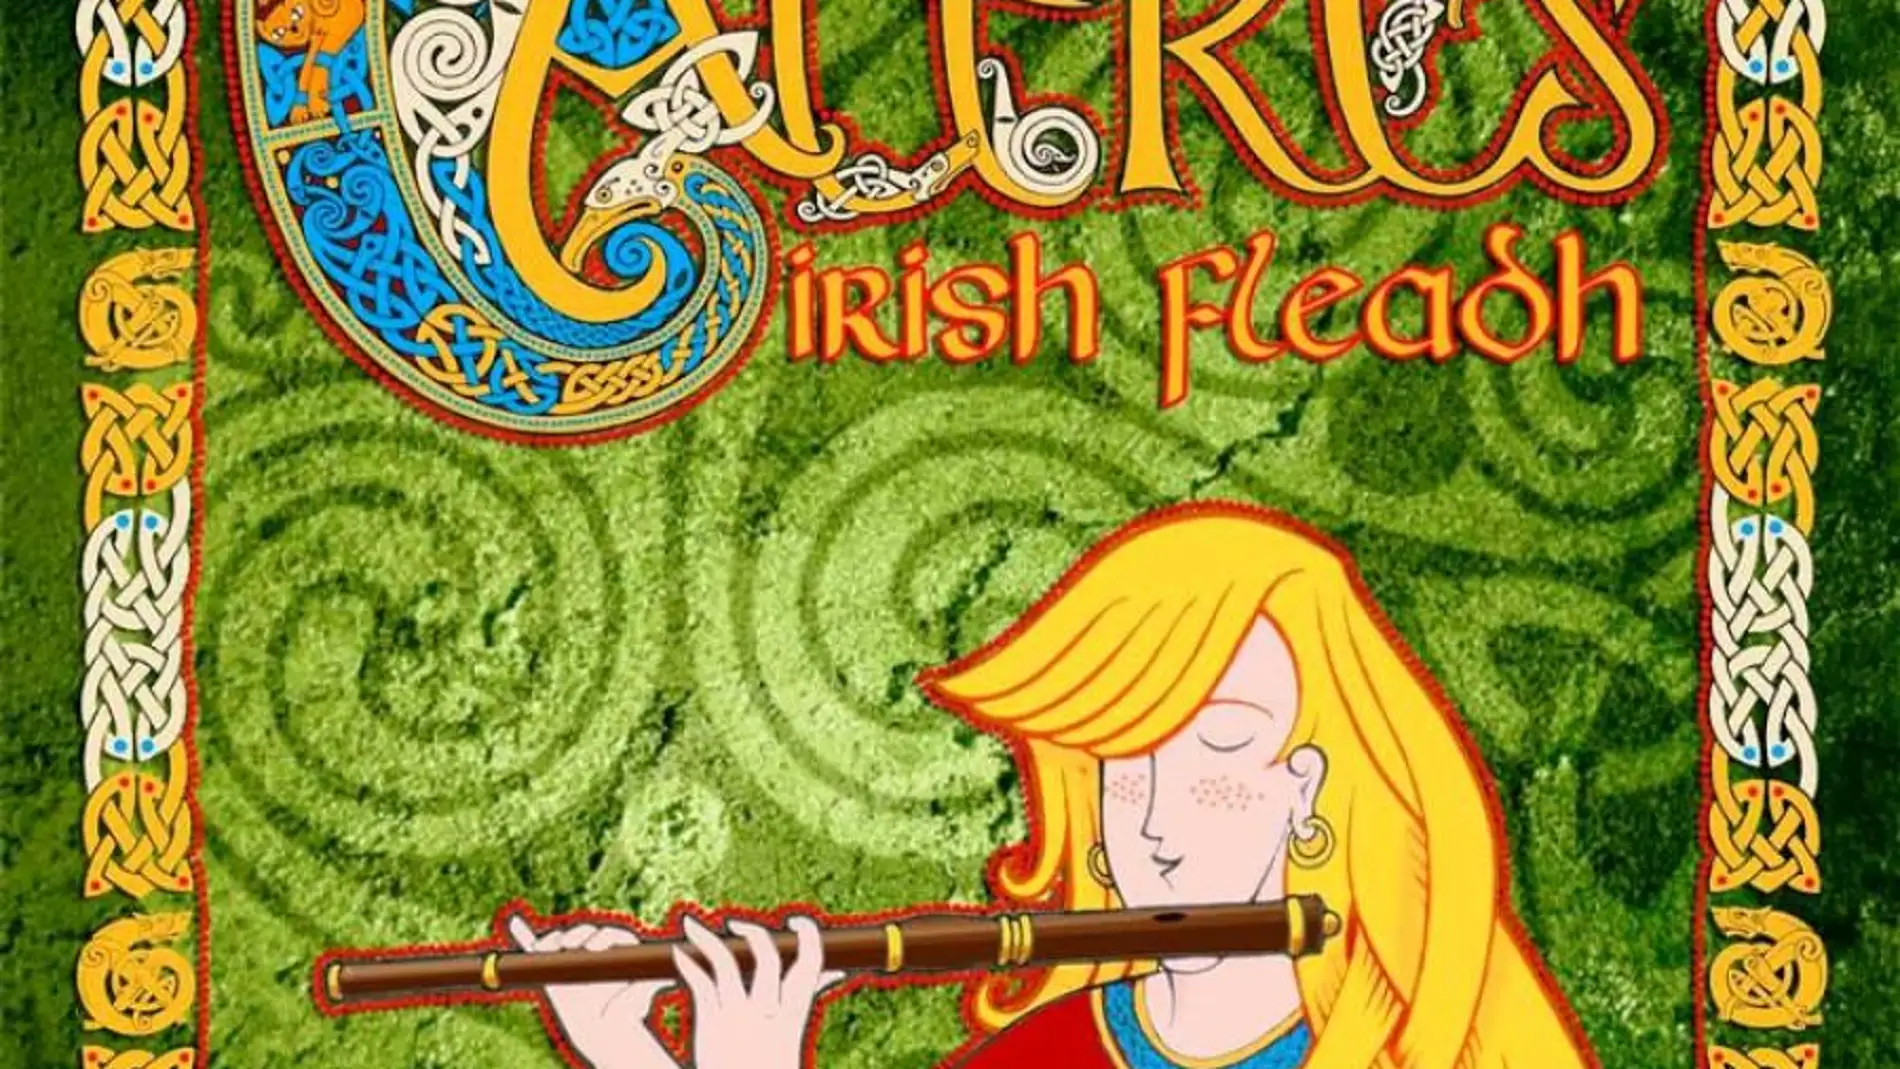 La esencia irlandesa regresará a Cáceres del 22 al 24 de septiembre con la edición XIX del festival Irish Fleadh 